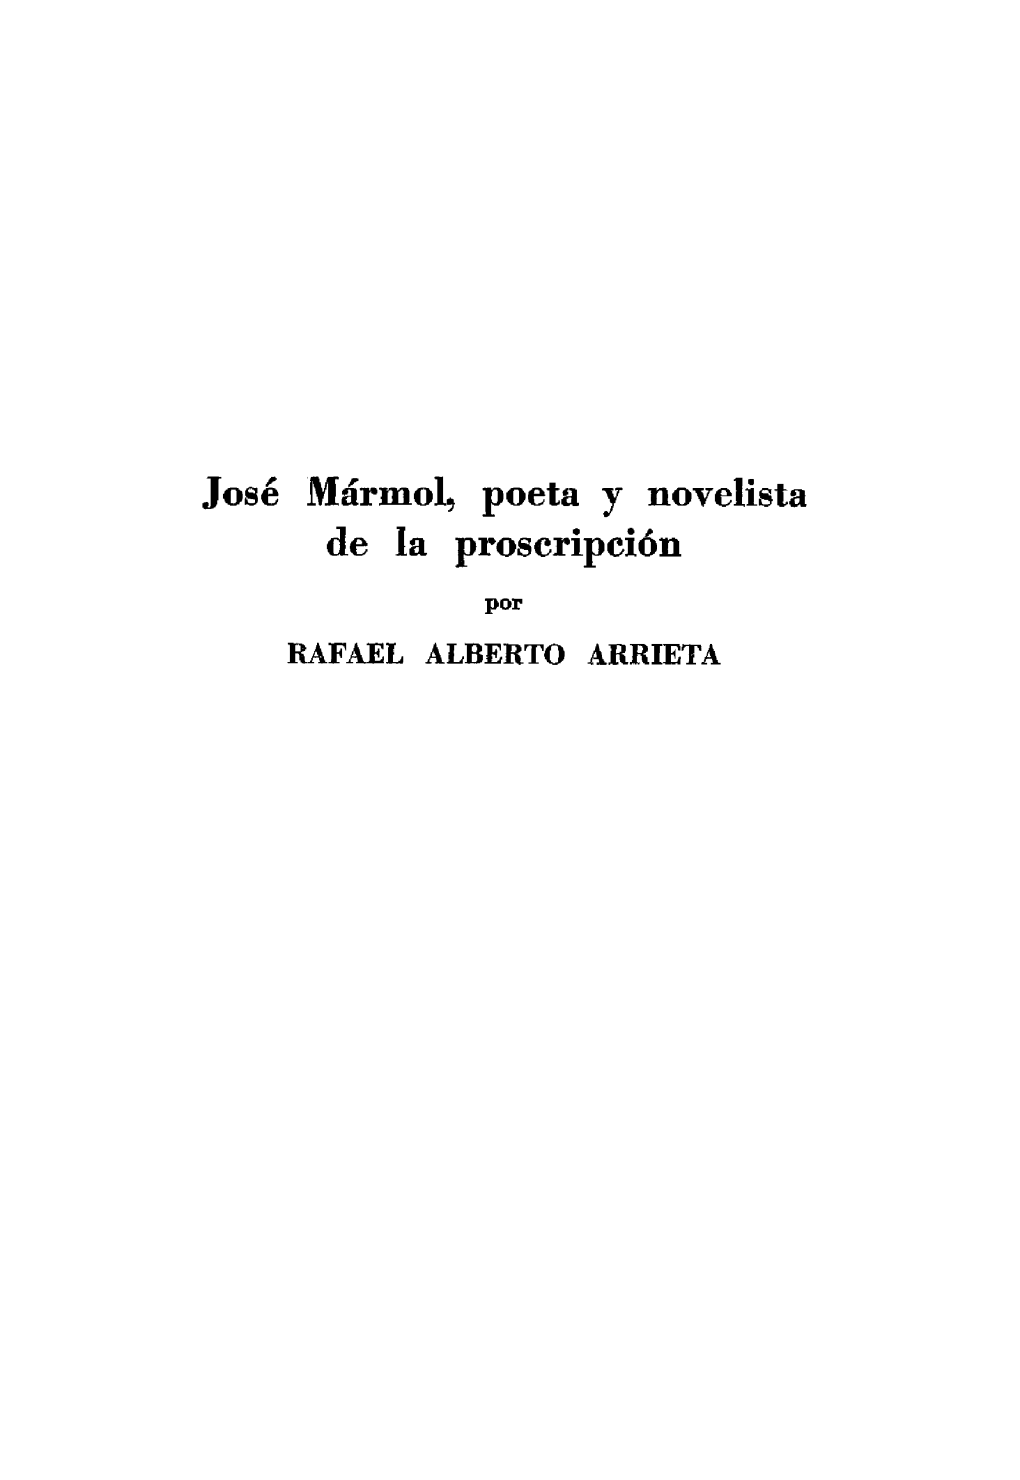 José Mármol, Poeta Y Novelista De La Proscripción Por RAFAEL ALBERTO ARRIETA I Los Cantos De Mayo